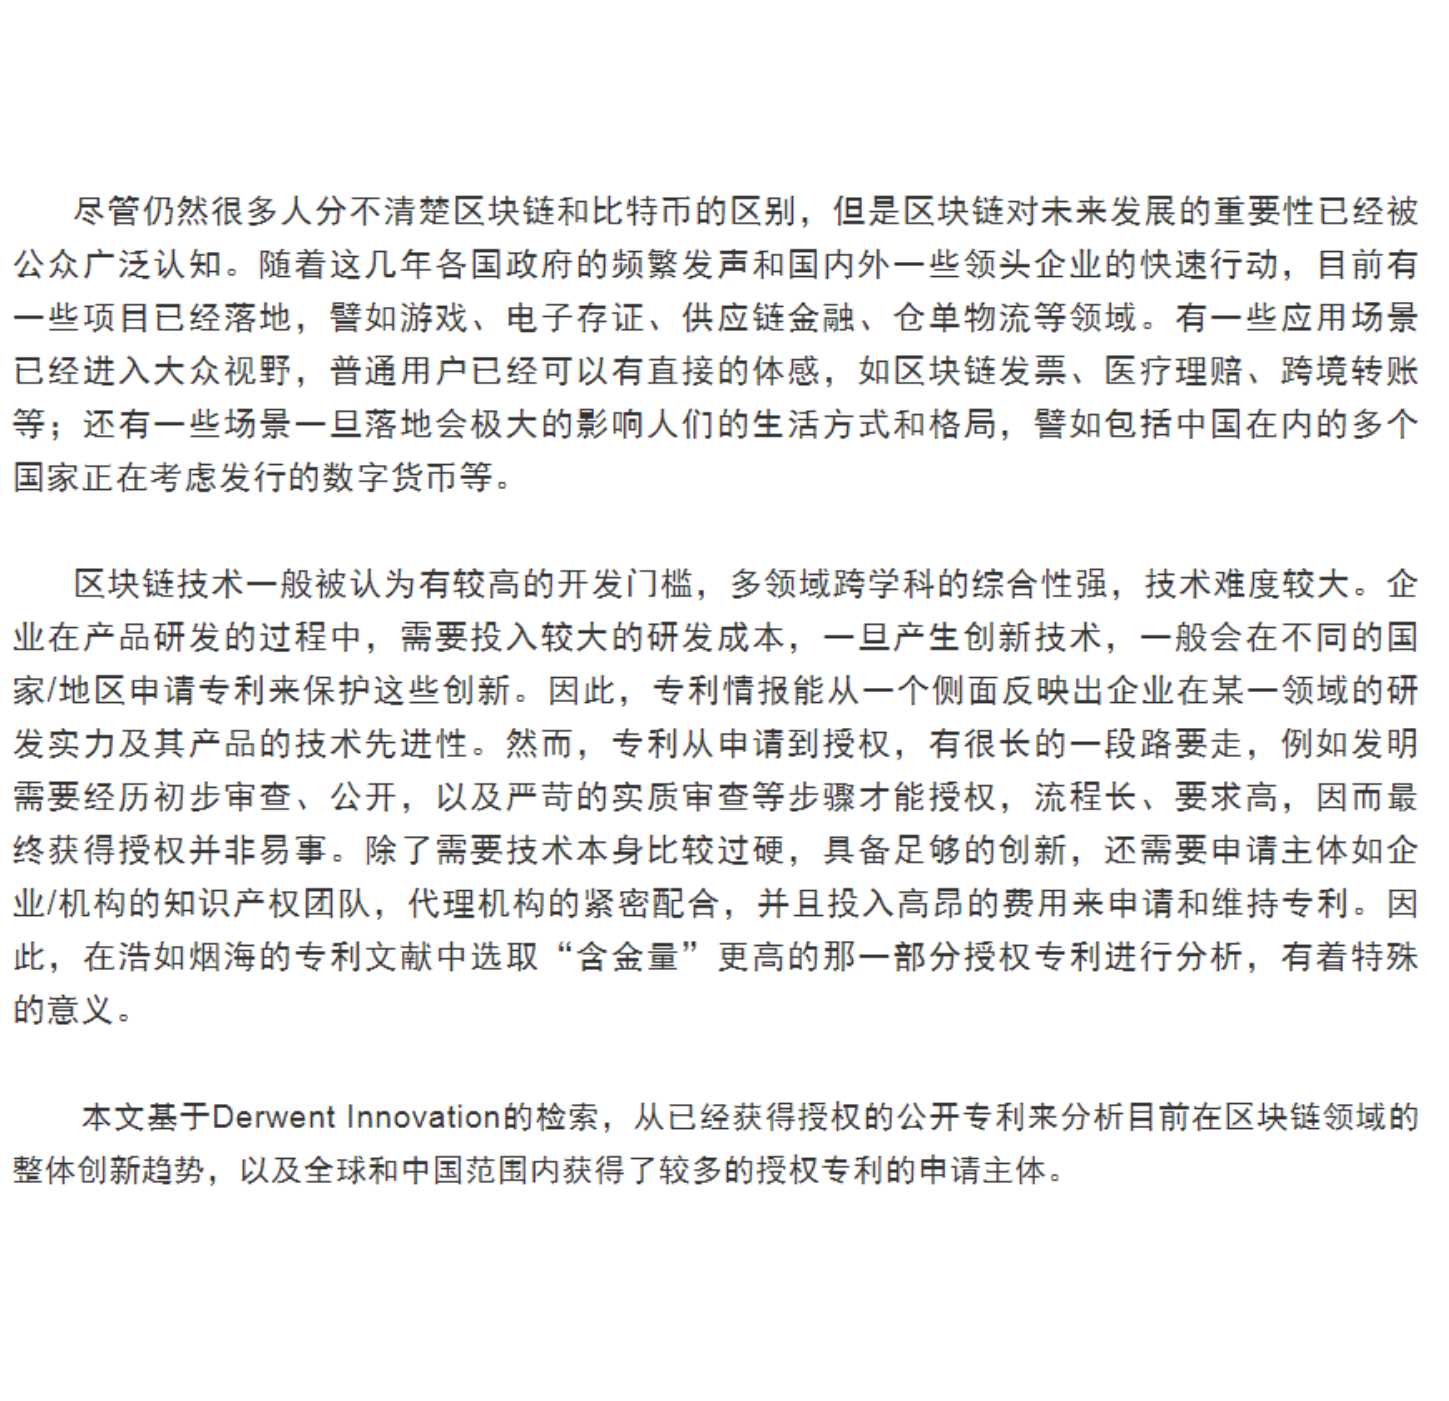 中国专利保护协会-2020年区块链领域全球授权专利报告-2022.02-11页